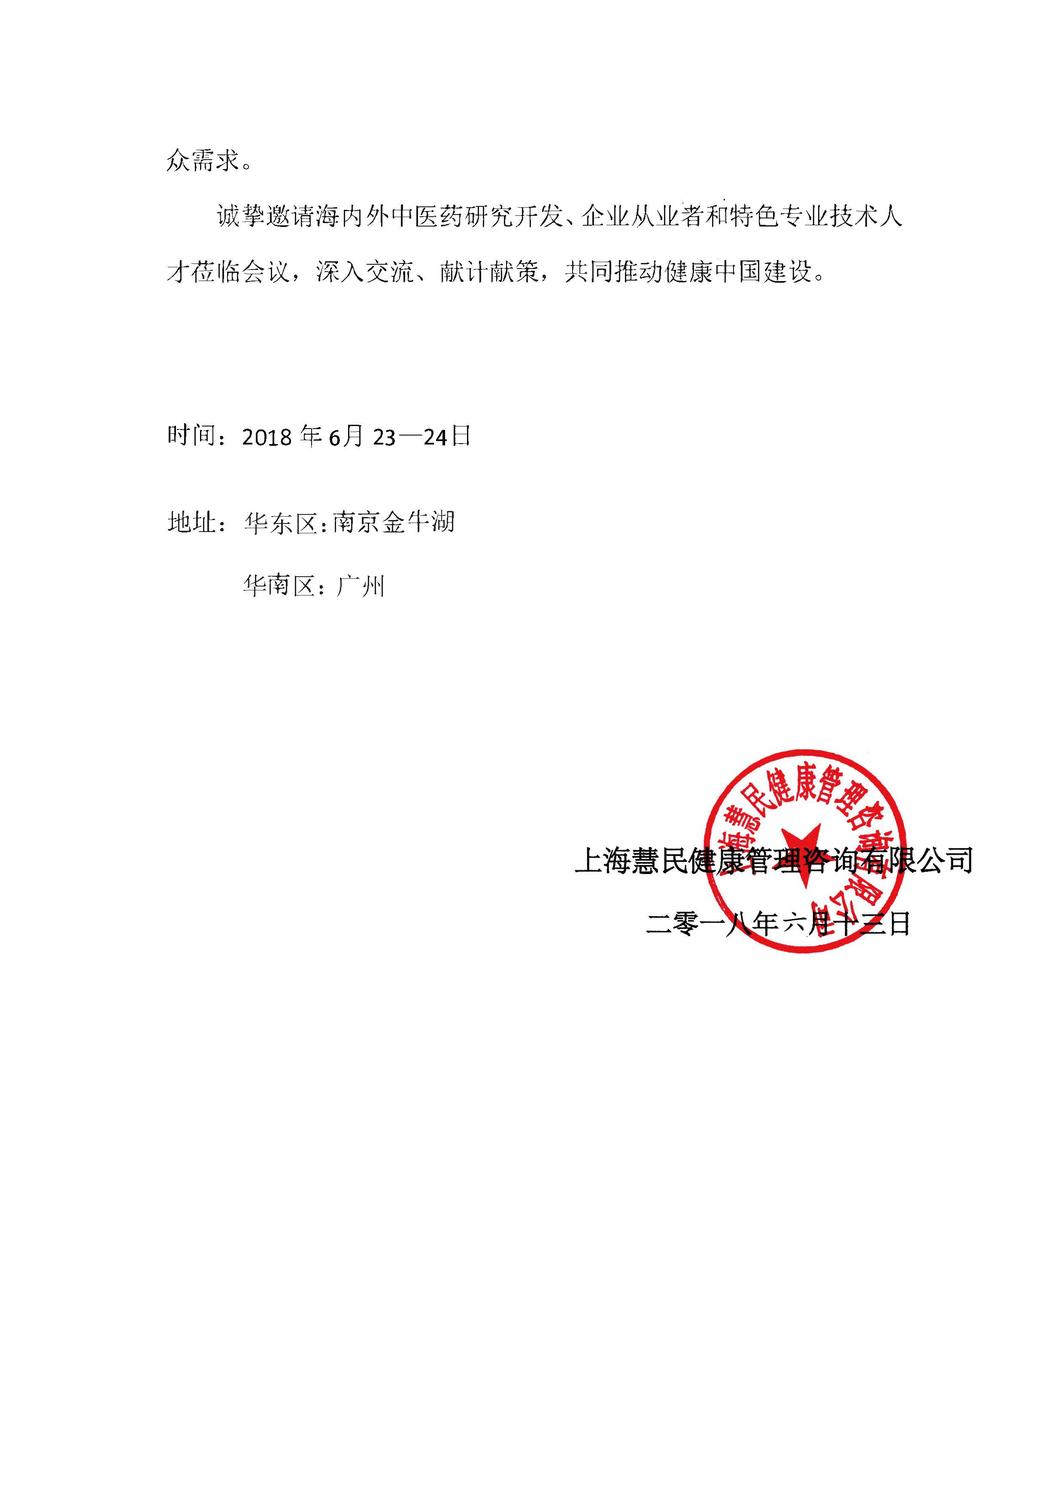 2018年6月南京会议通知_页面_2.jpg